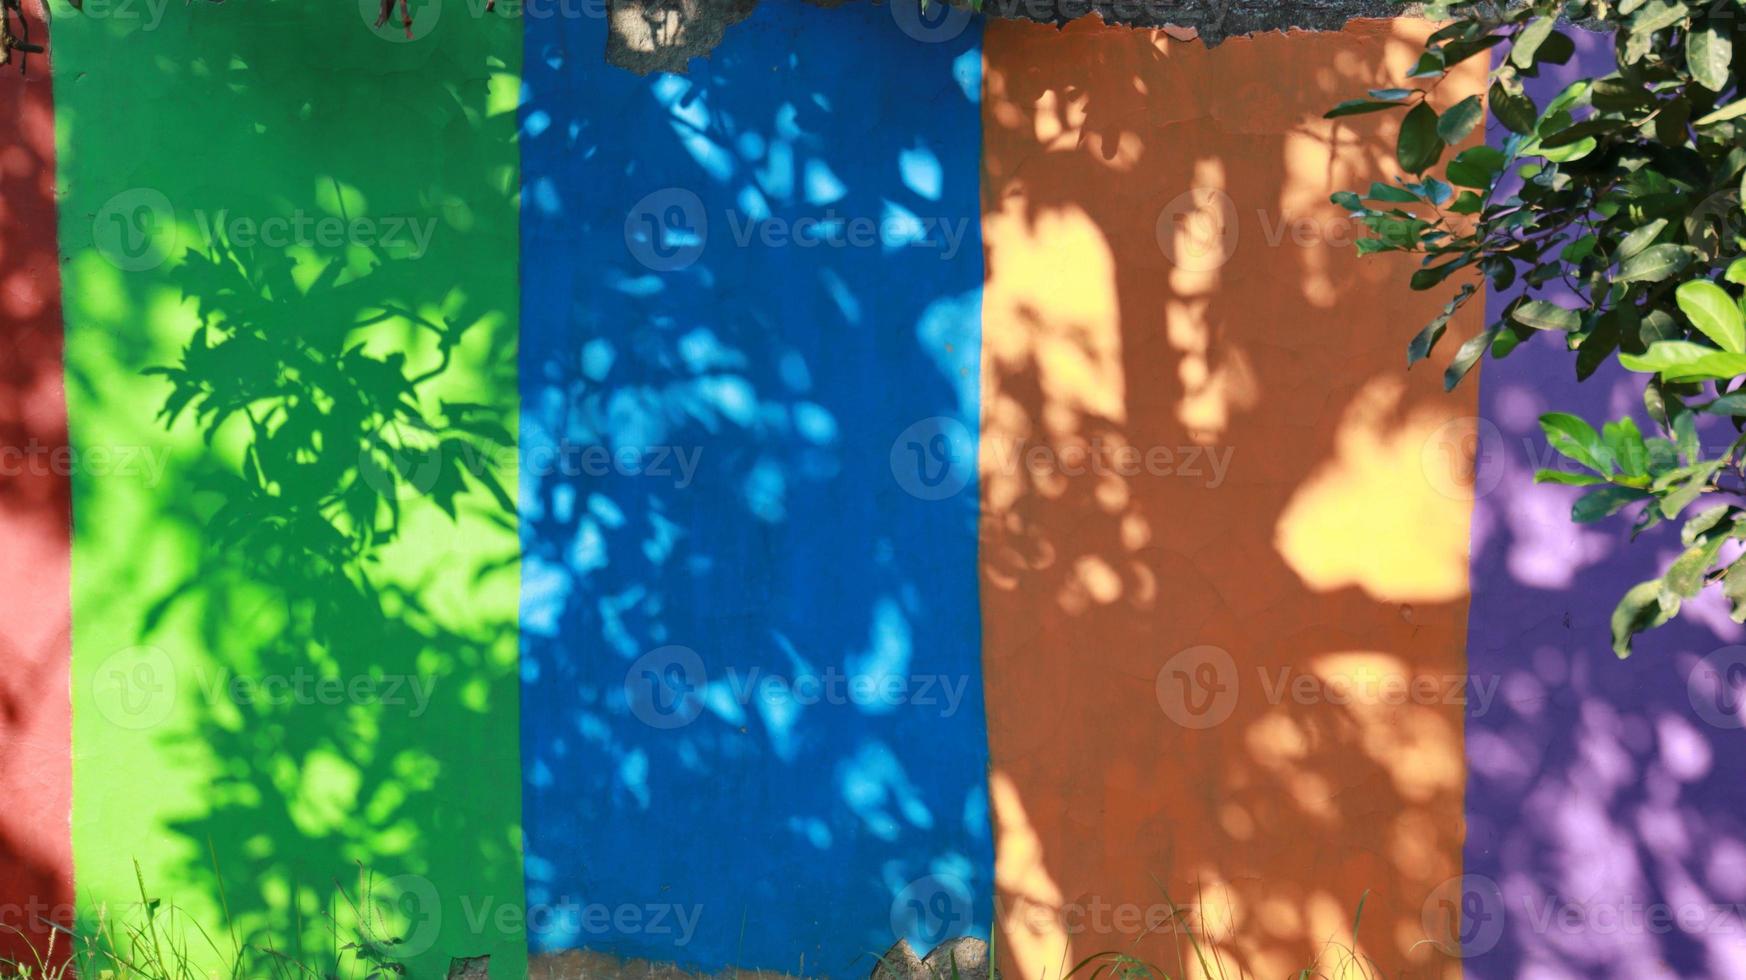 kleurrijke muren, met boomschaduwen die een uniek ornament vormen foto